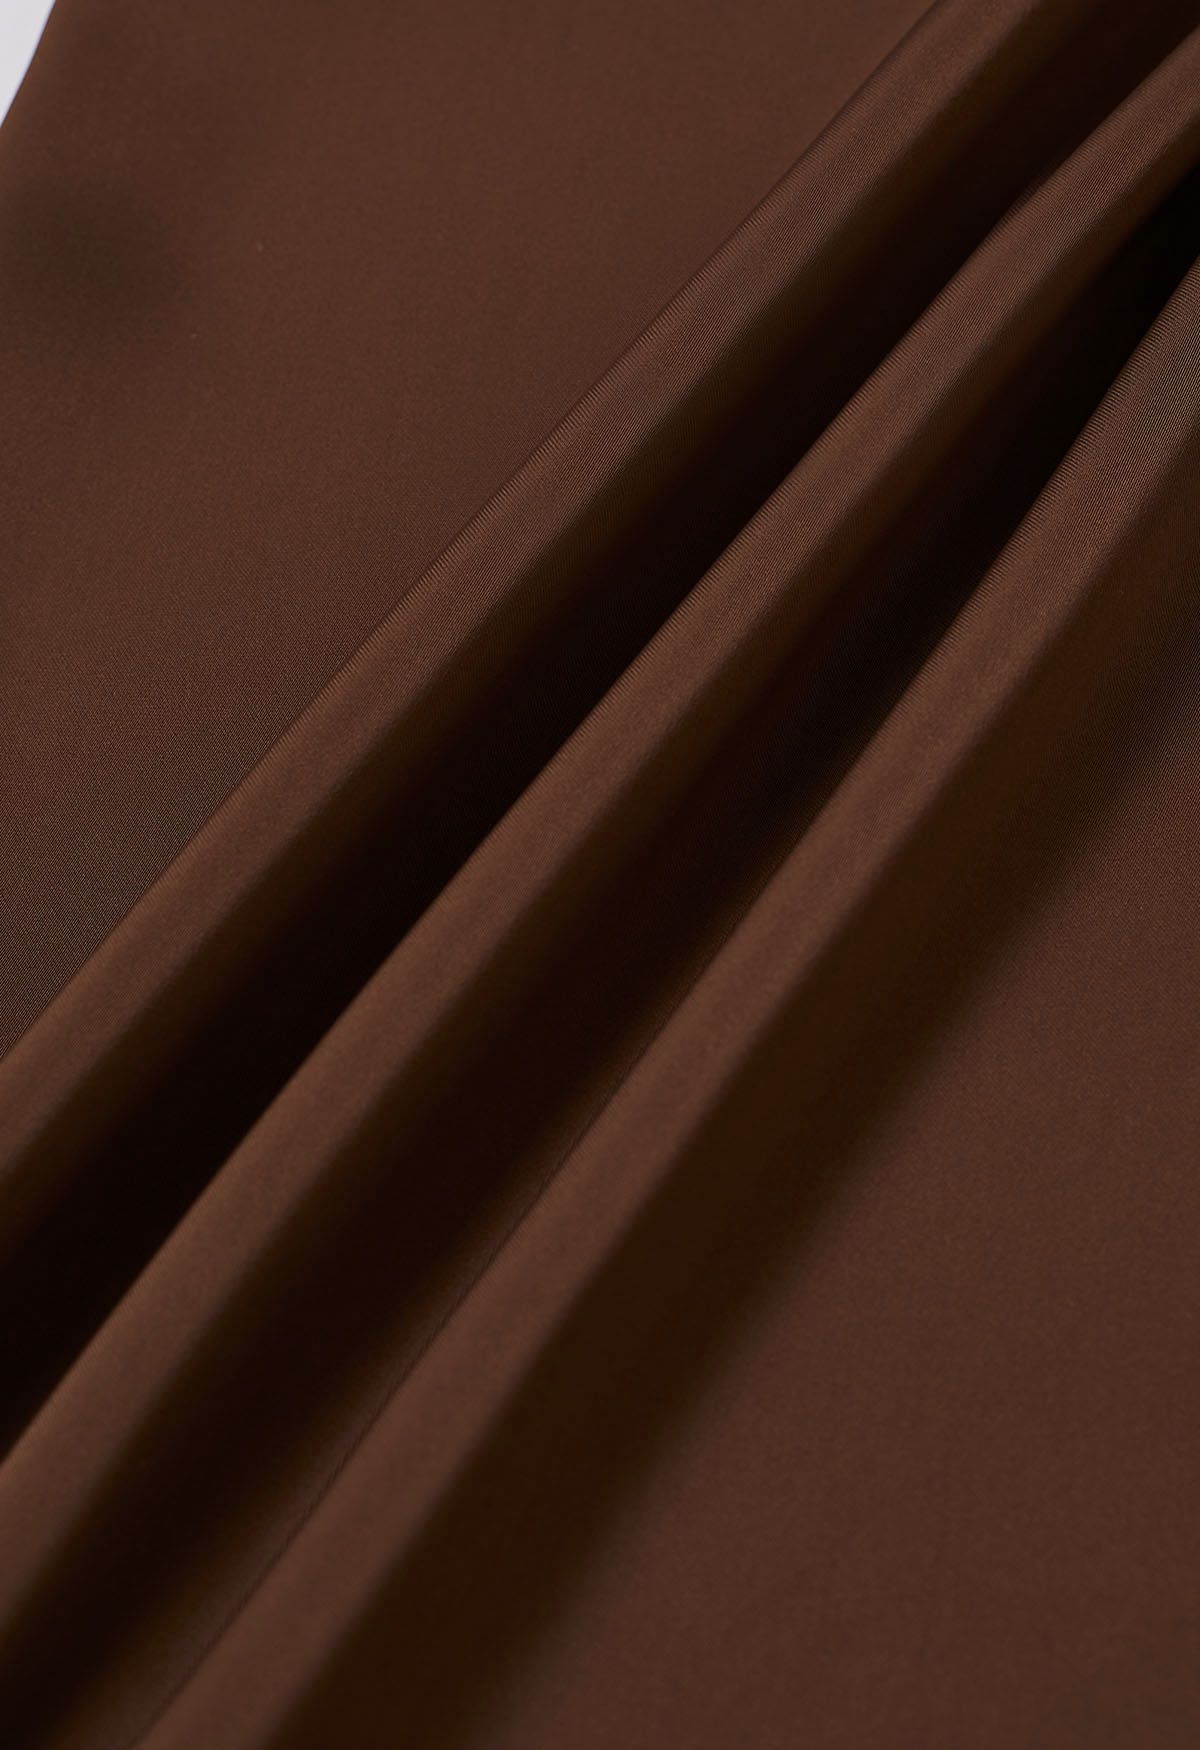 Falda larga de satén con cordón anudado en marrón